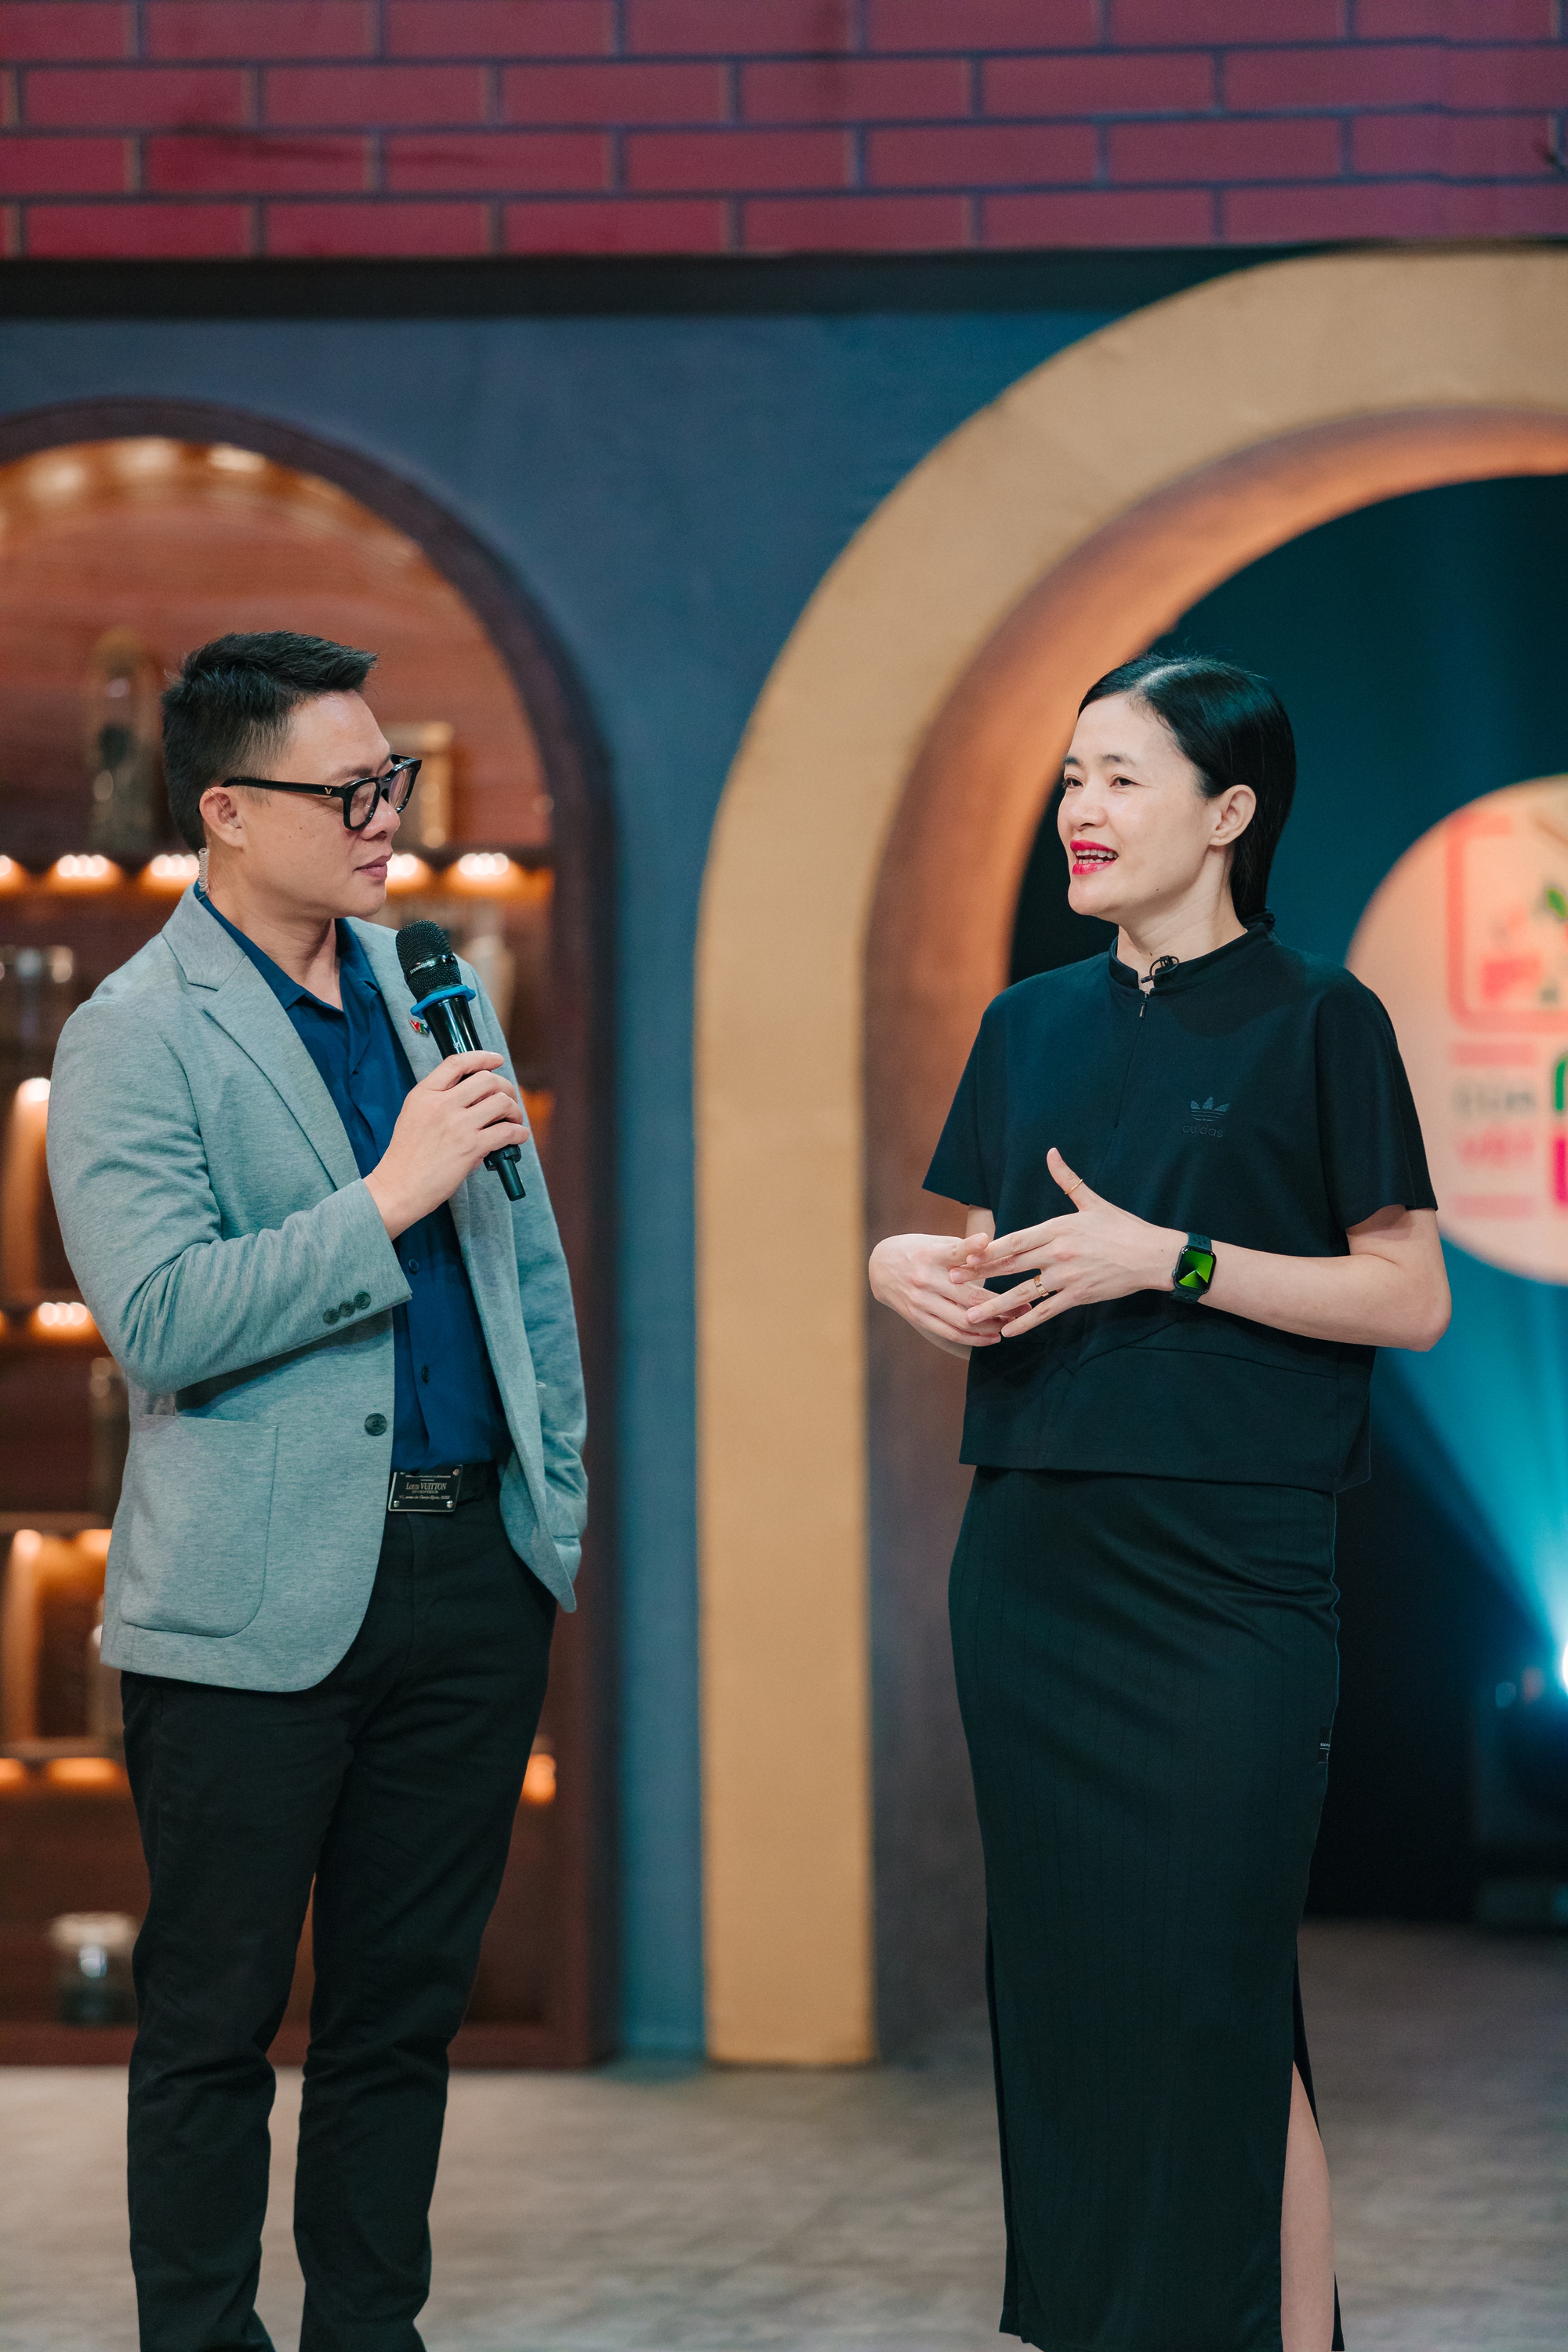 "Nữ hoàng cầu mây" Lưu Thị Thanh làm giám khảo khách mời Của ngon vật lạ